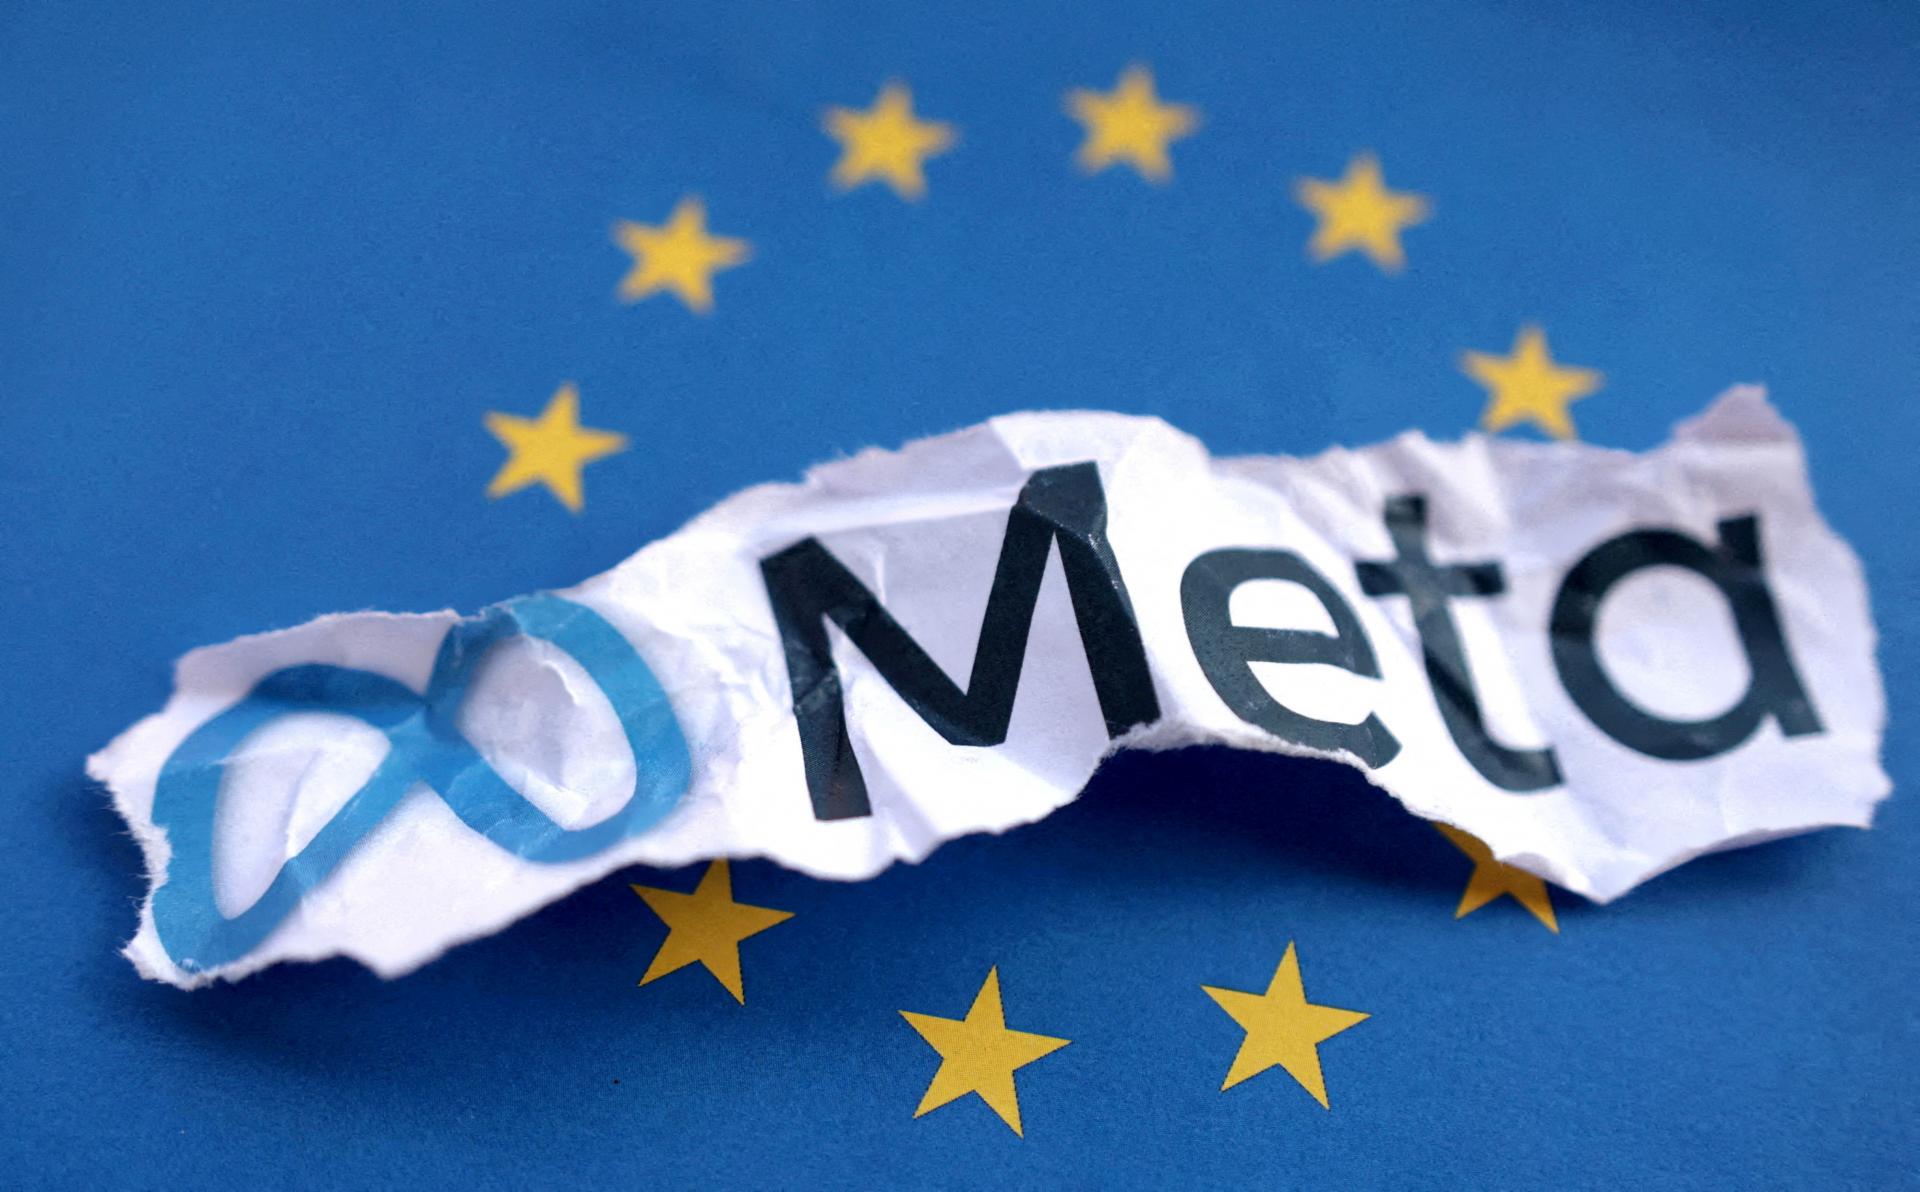 Spoločnosti Meta údajne hrozí v Únii pokuta v miliardách eur kvôli porušeniu hospodárskej súťaže